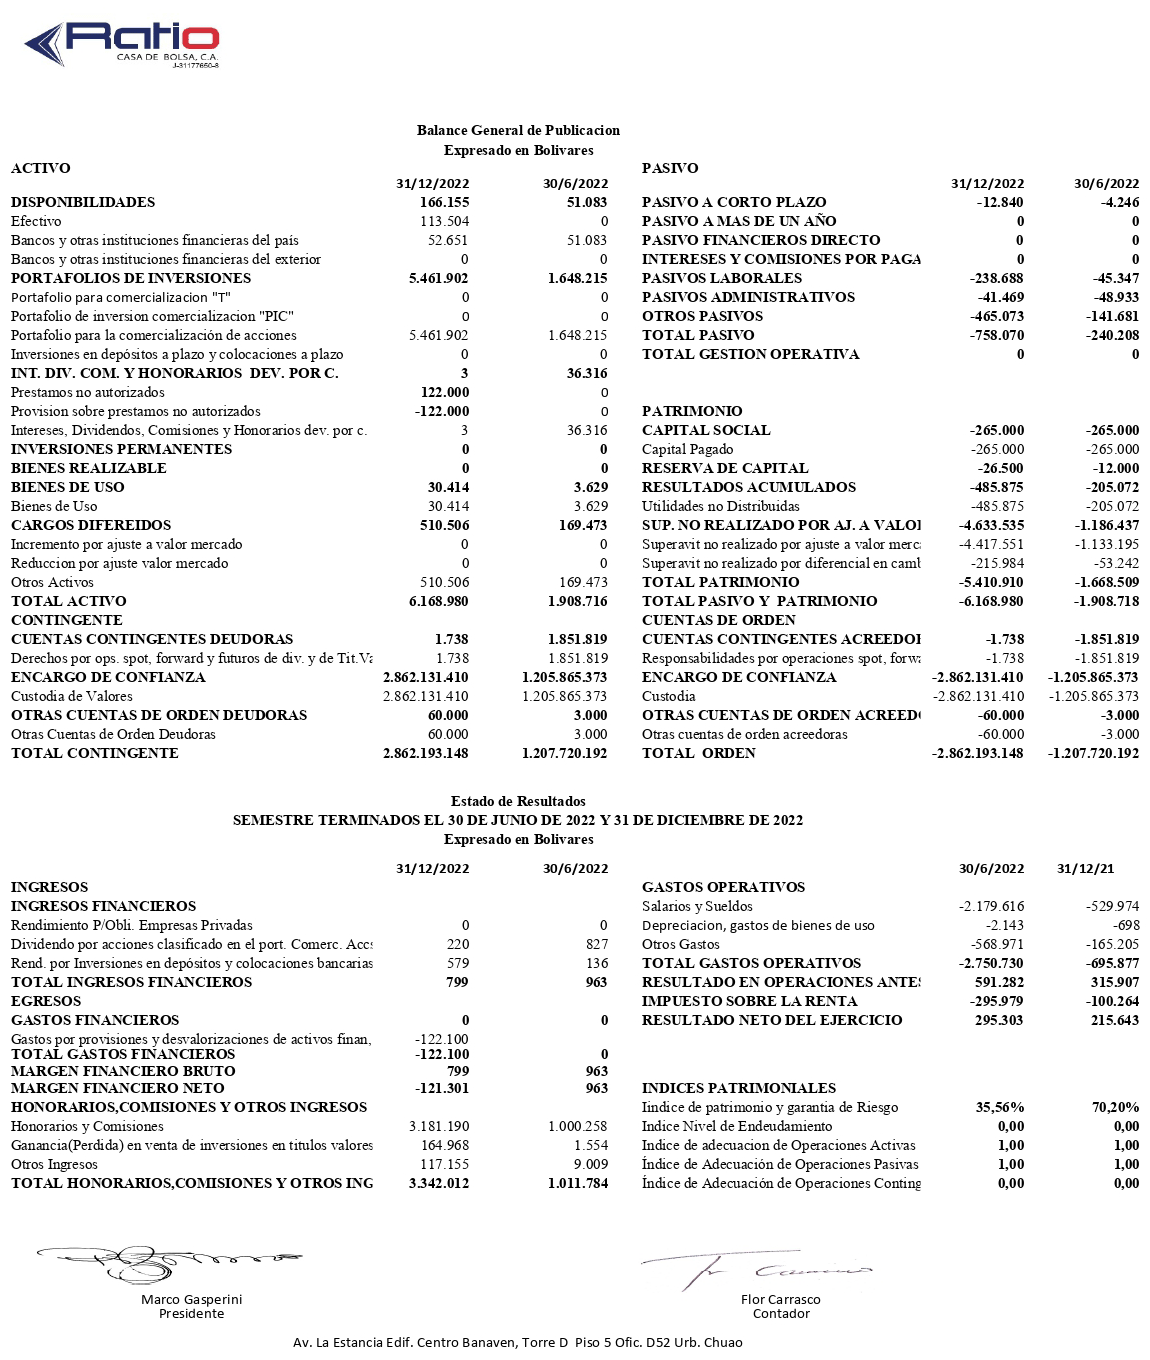 Ratio Casa de Bolsa Balance de Publicación al 31-12-2022